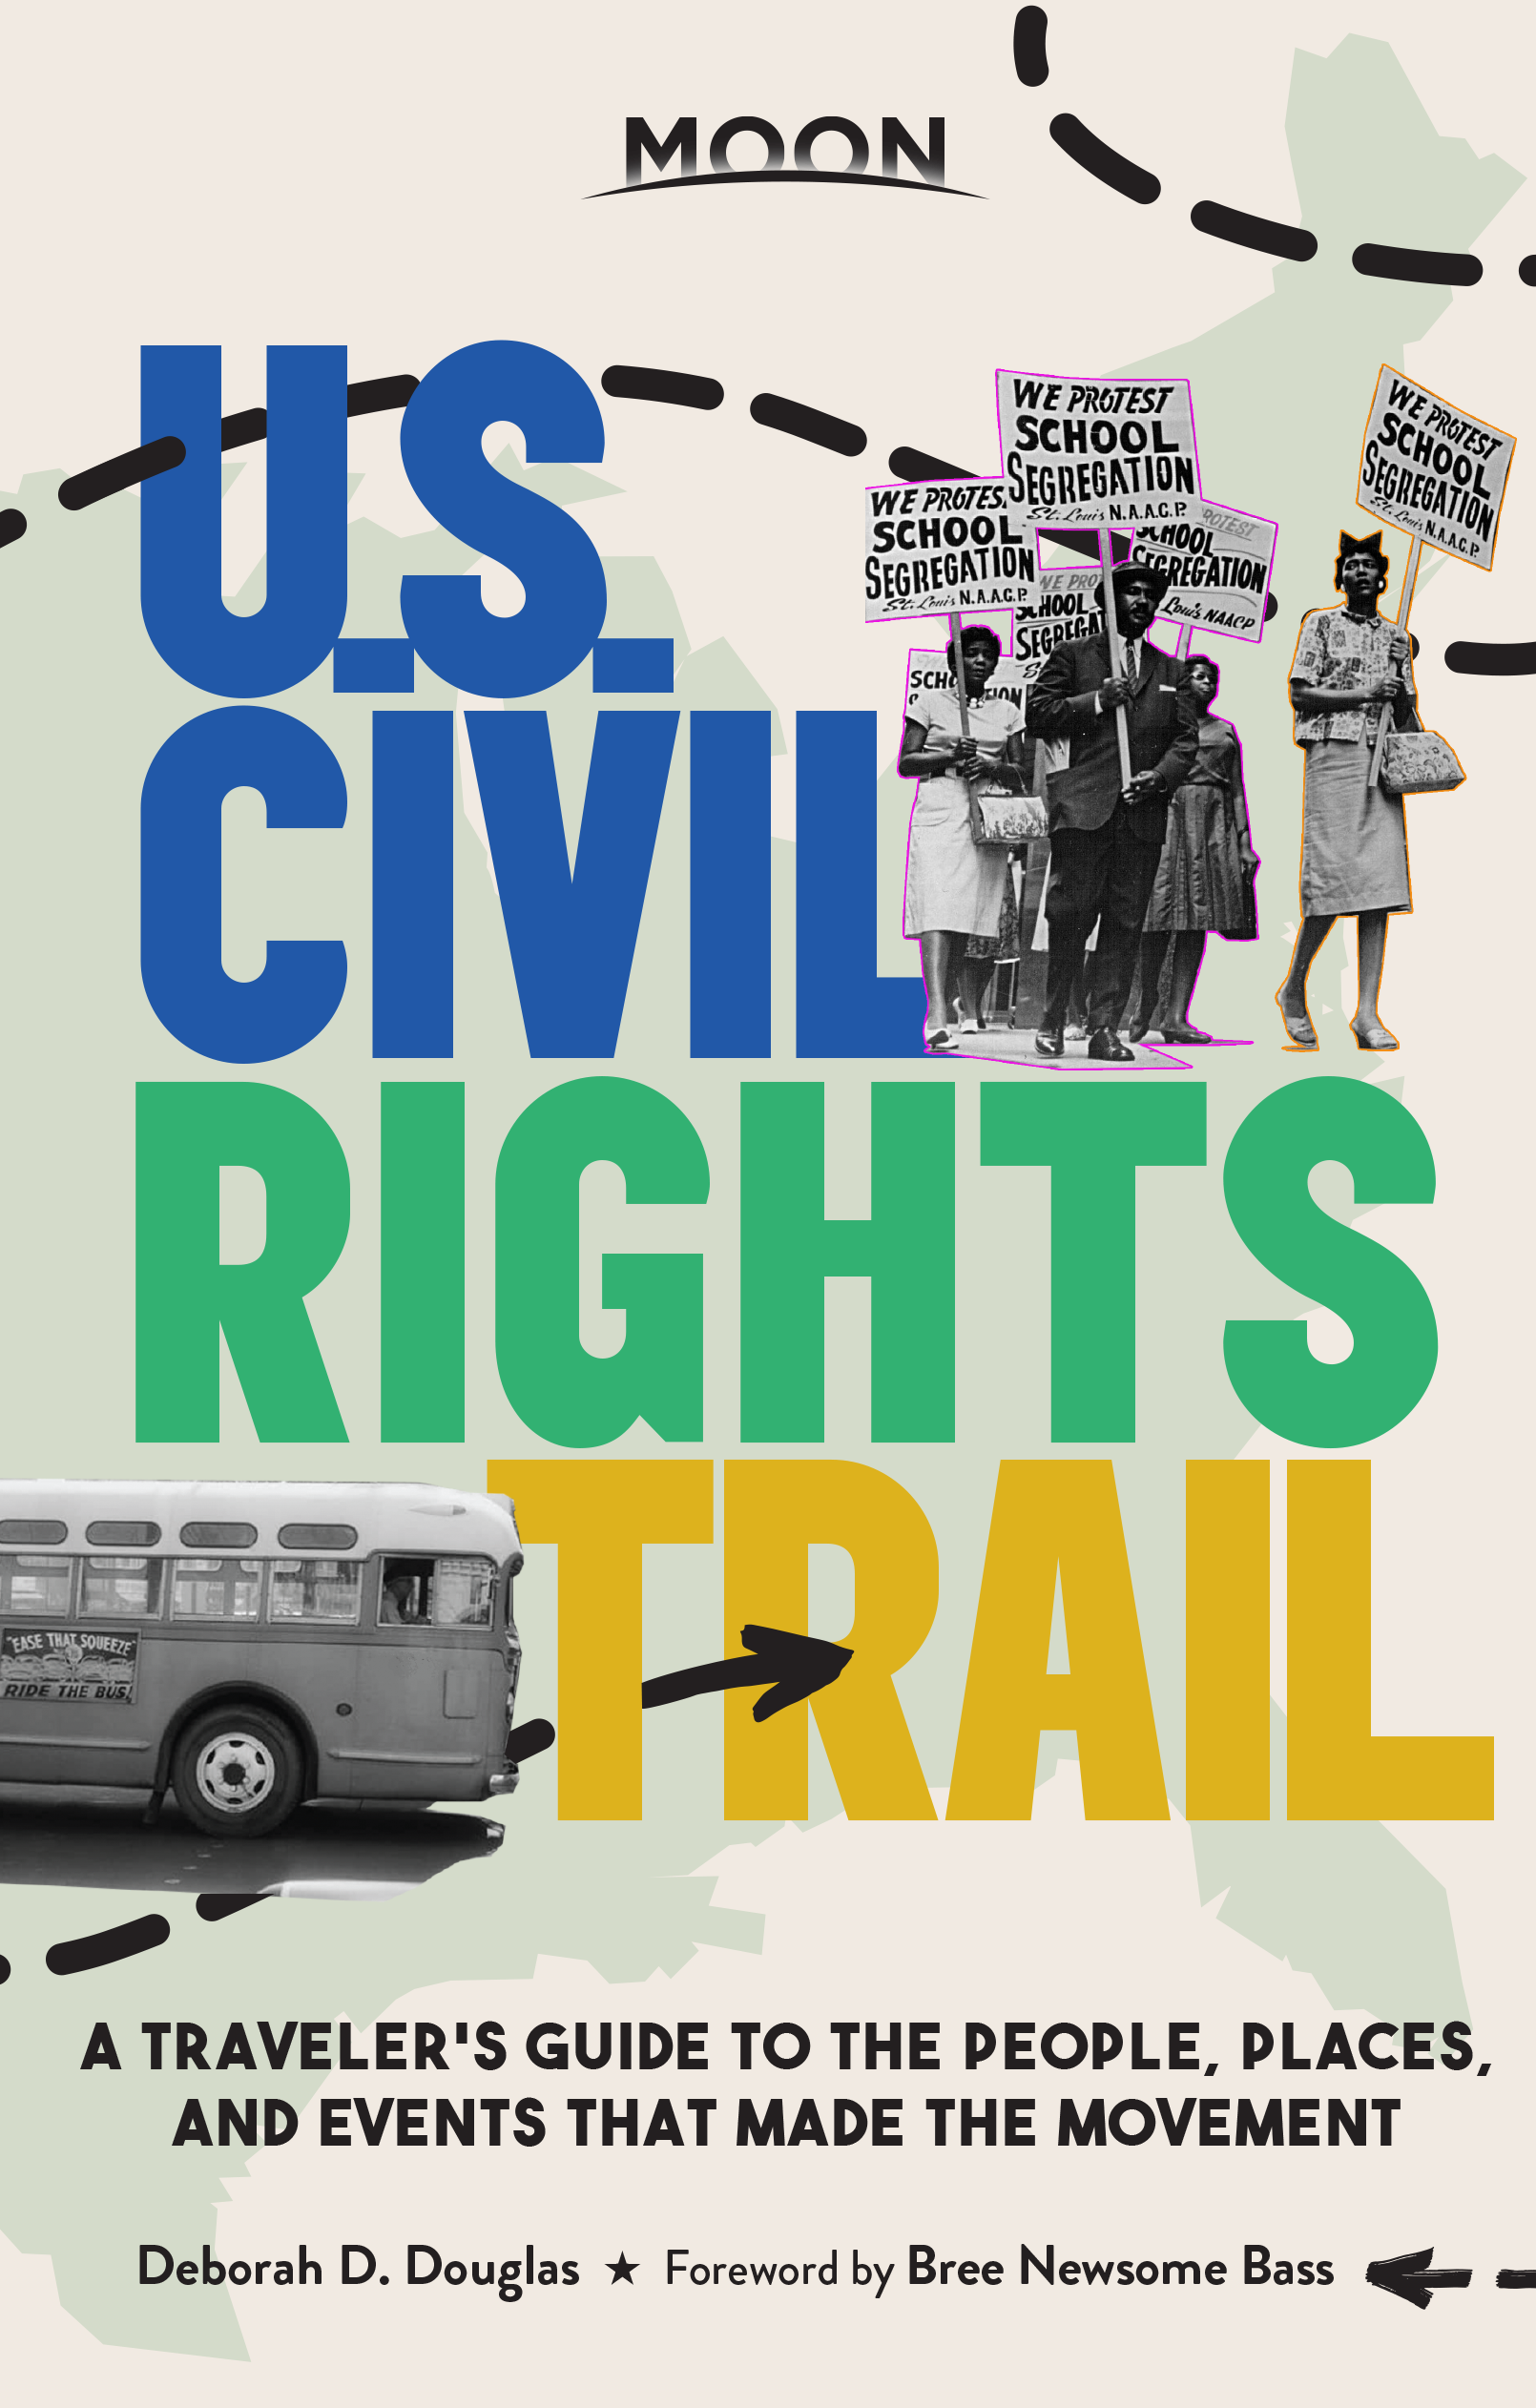 MOON U.S. Civil Rights Trail .png